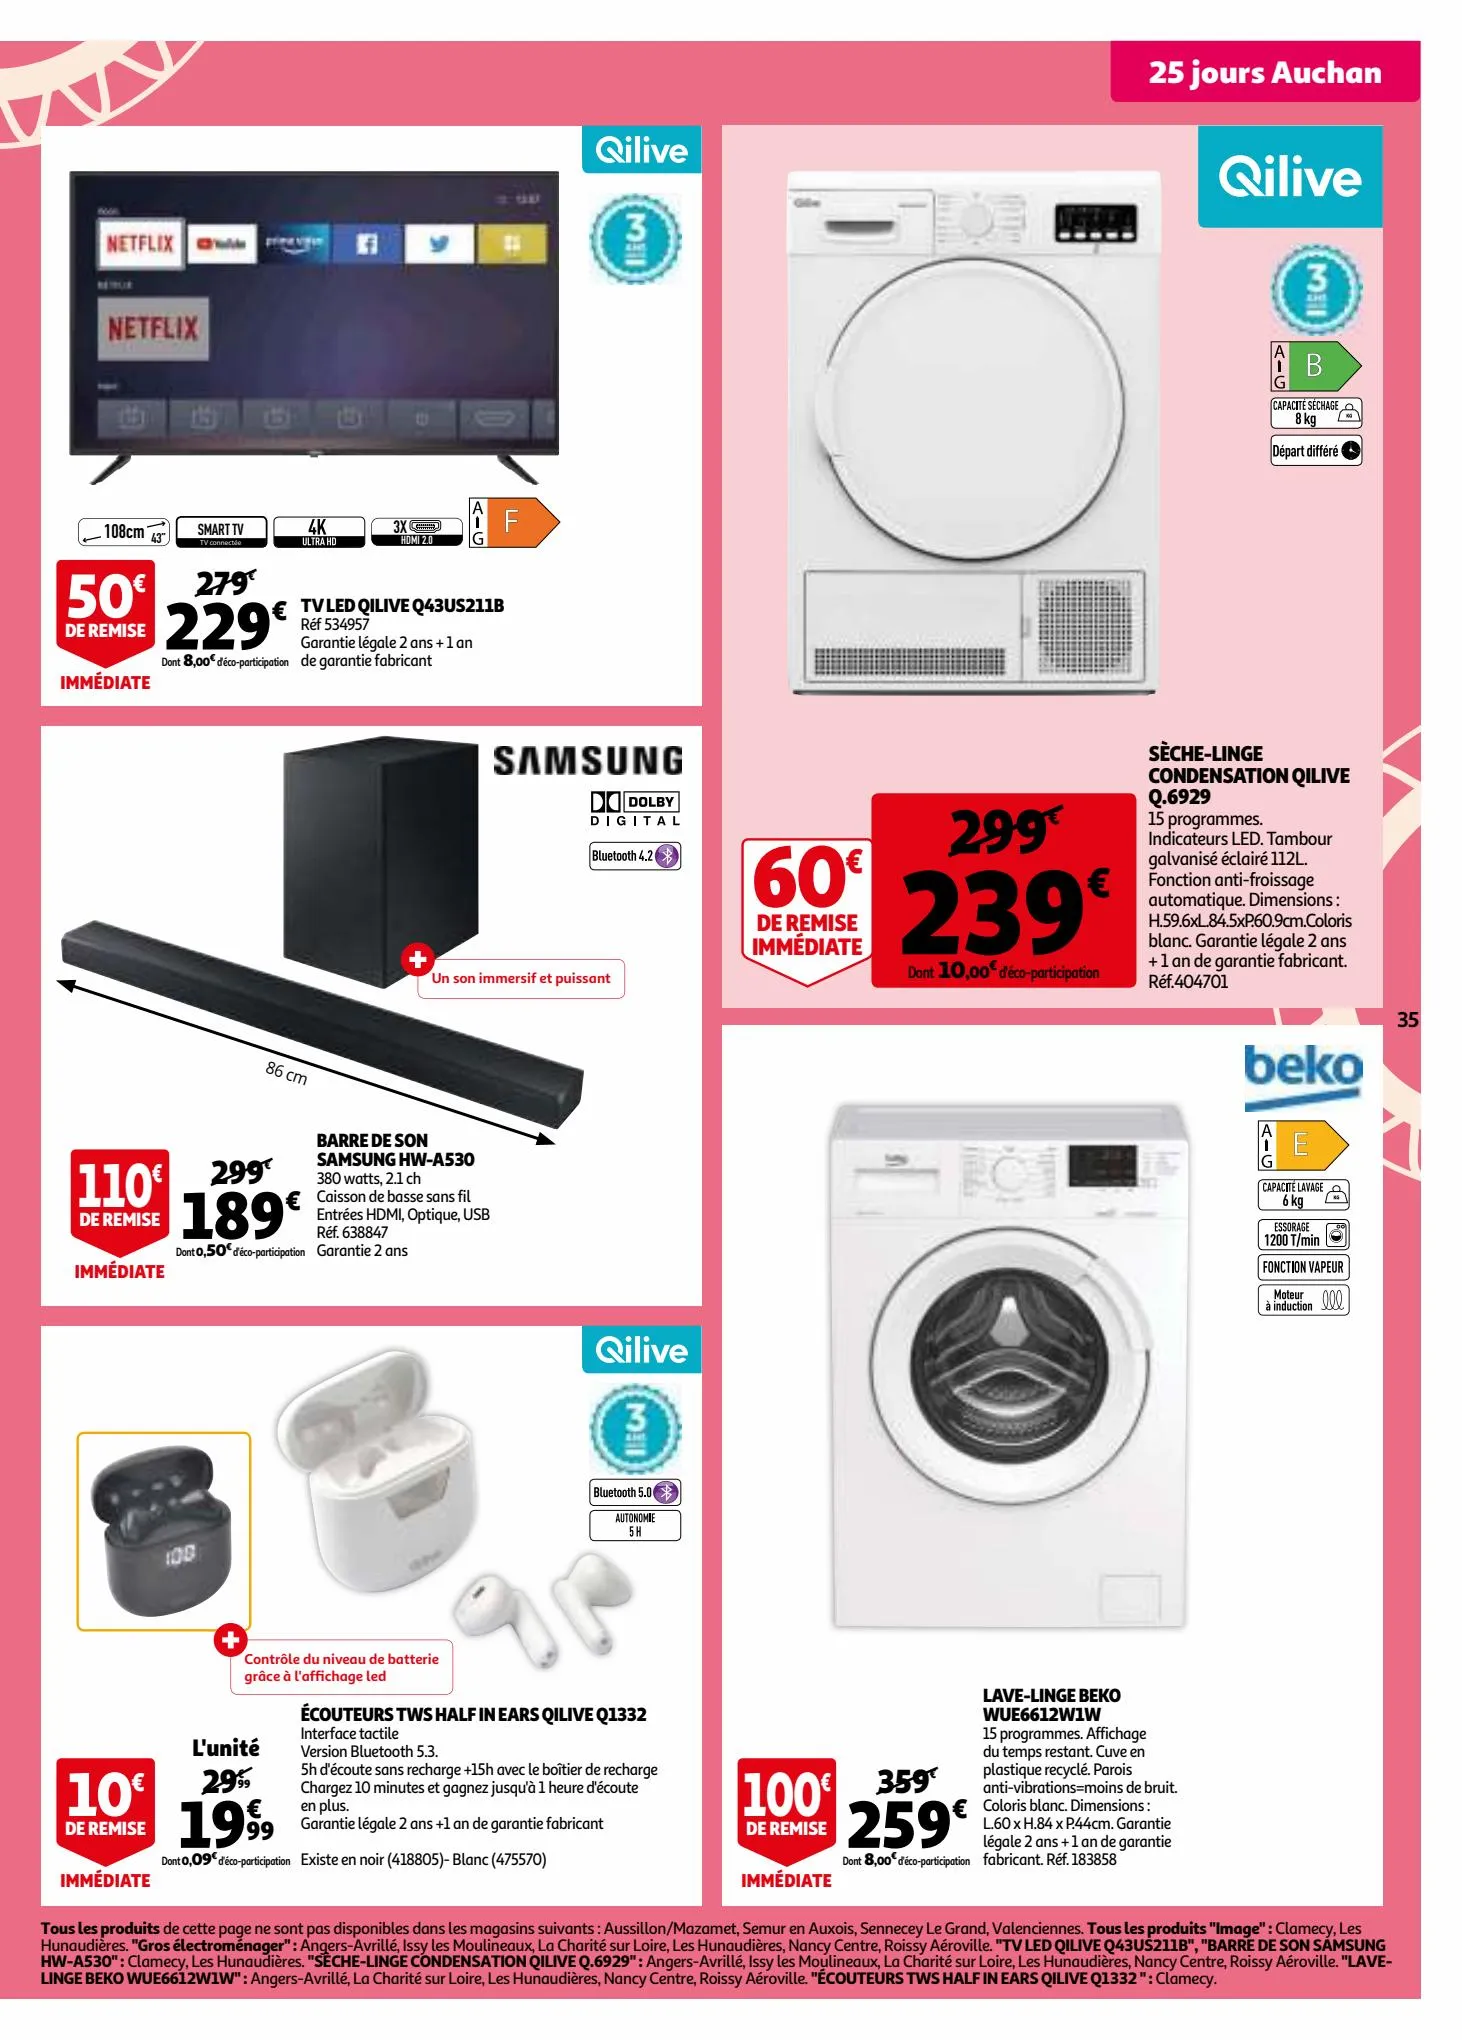 Catalogue 25 jours Auchan, page 00035